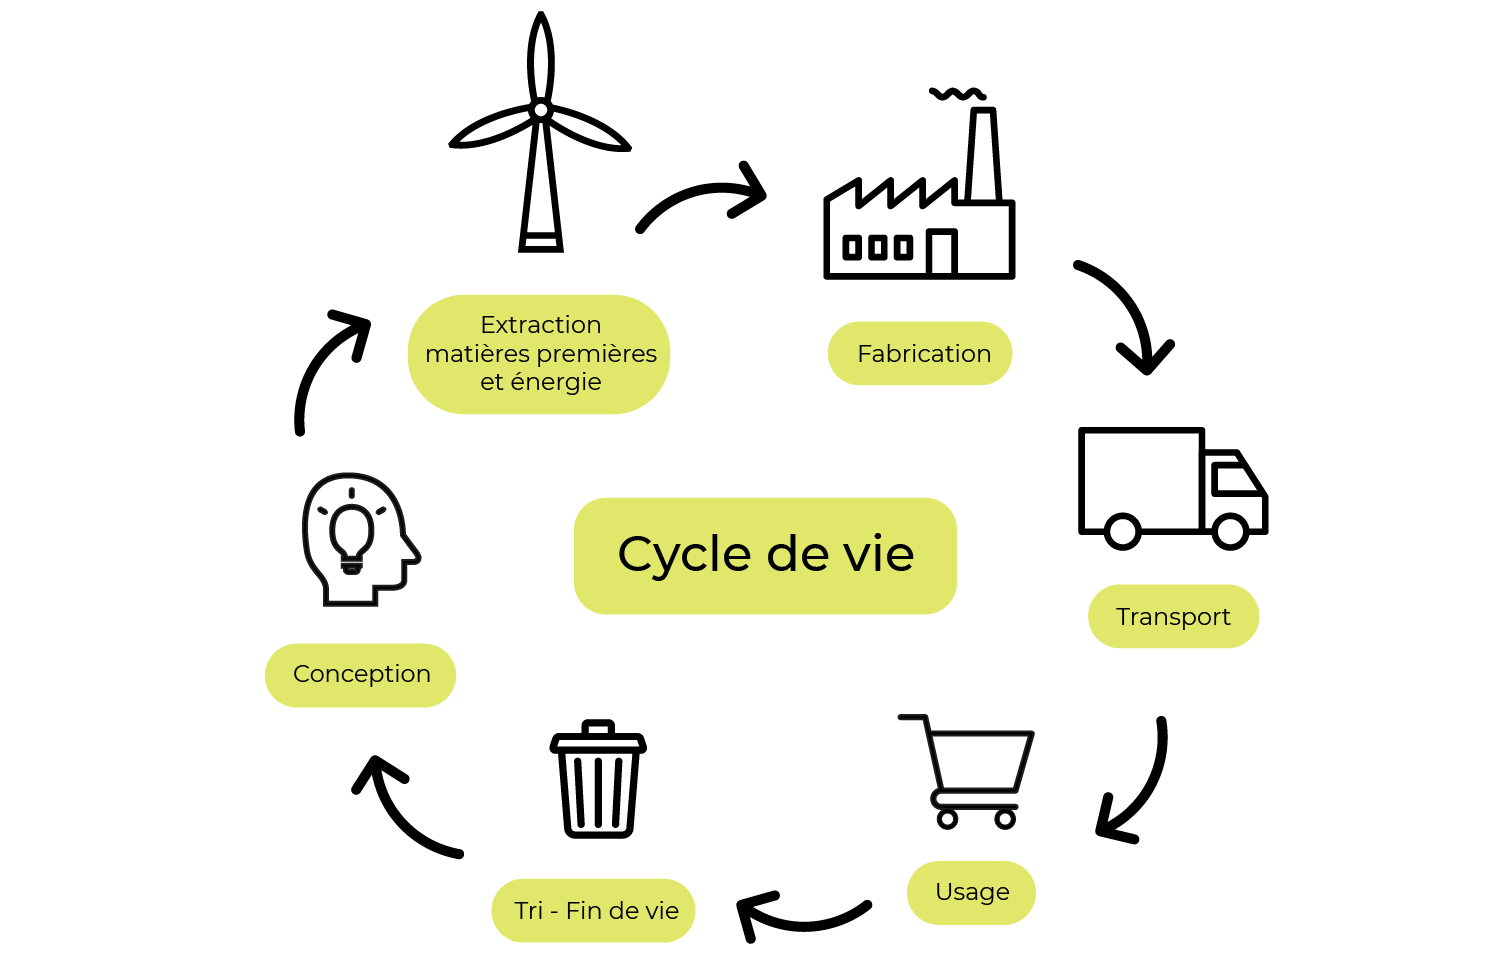 Boucle avec les étapes suivantes : conception > extraction matières premières et énergie > fabrication > transport > usage > tri - fin de vie.